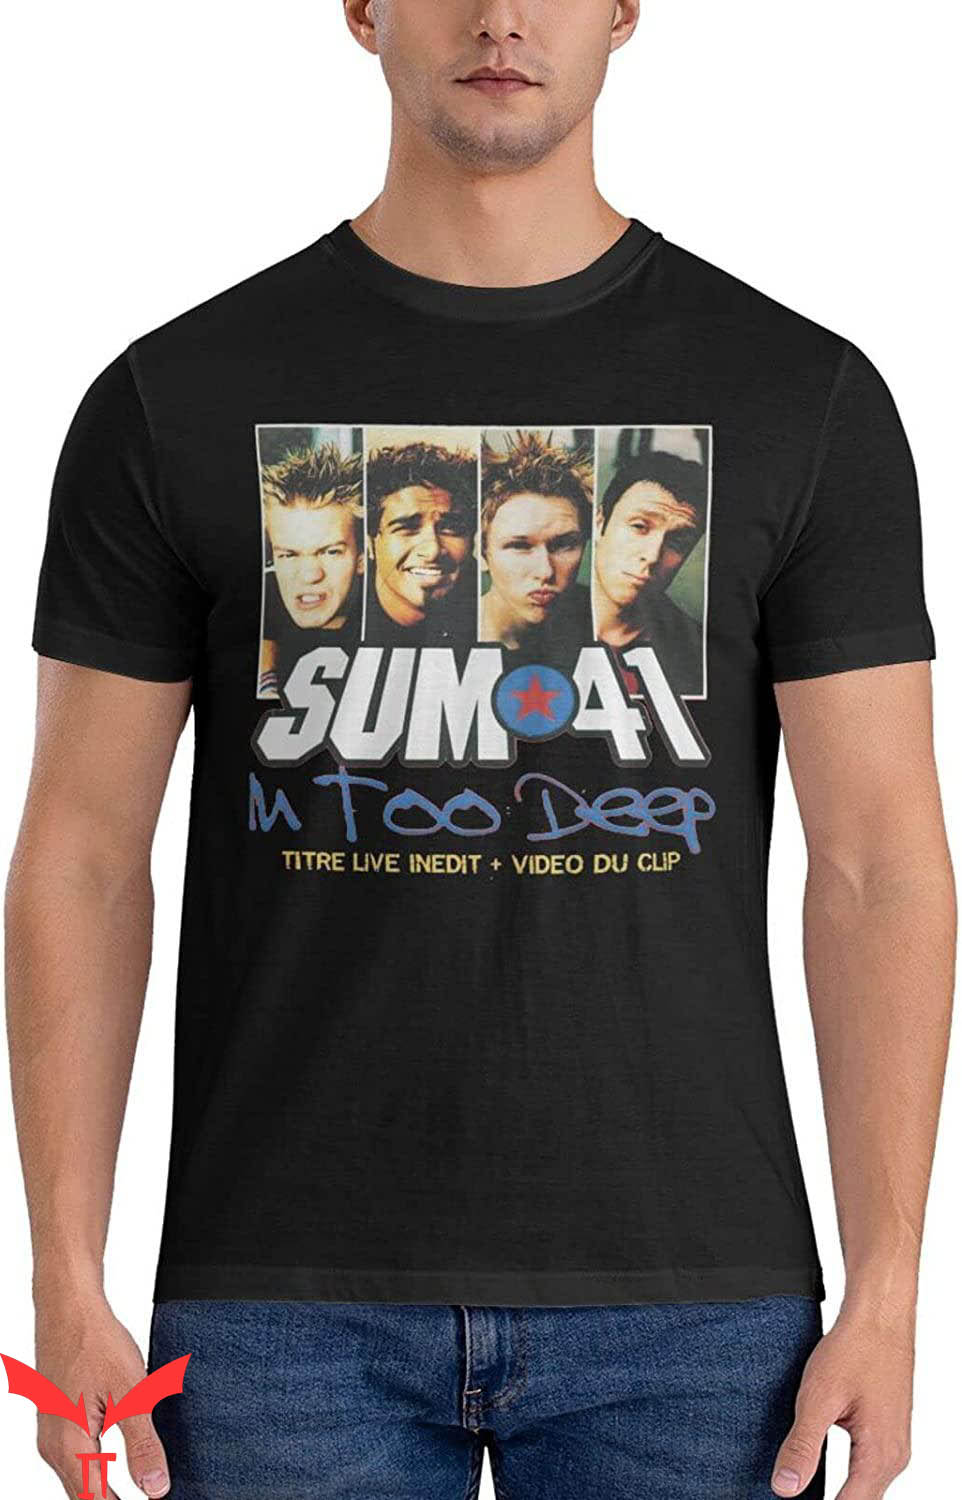 Sum 41 T-Shirt Sum 41 M Too Deep T-Shirt